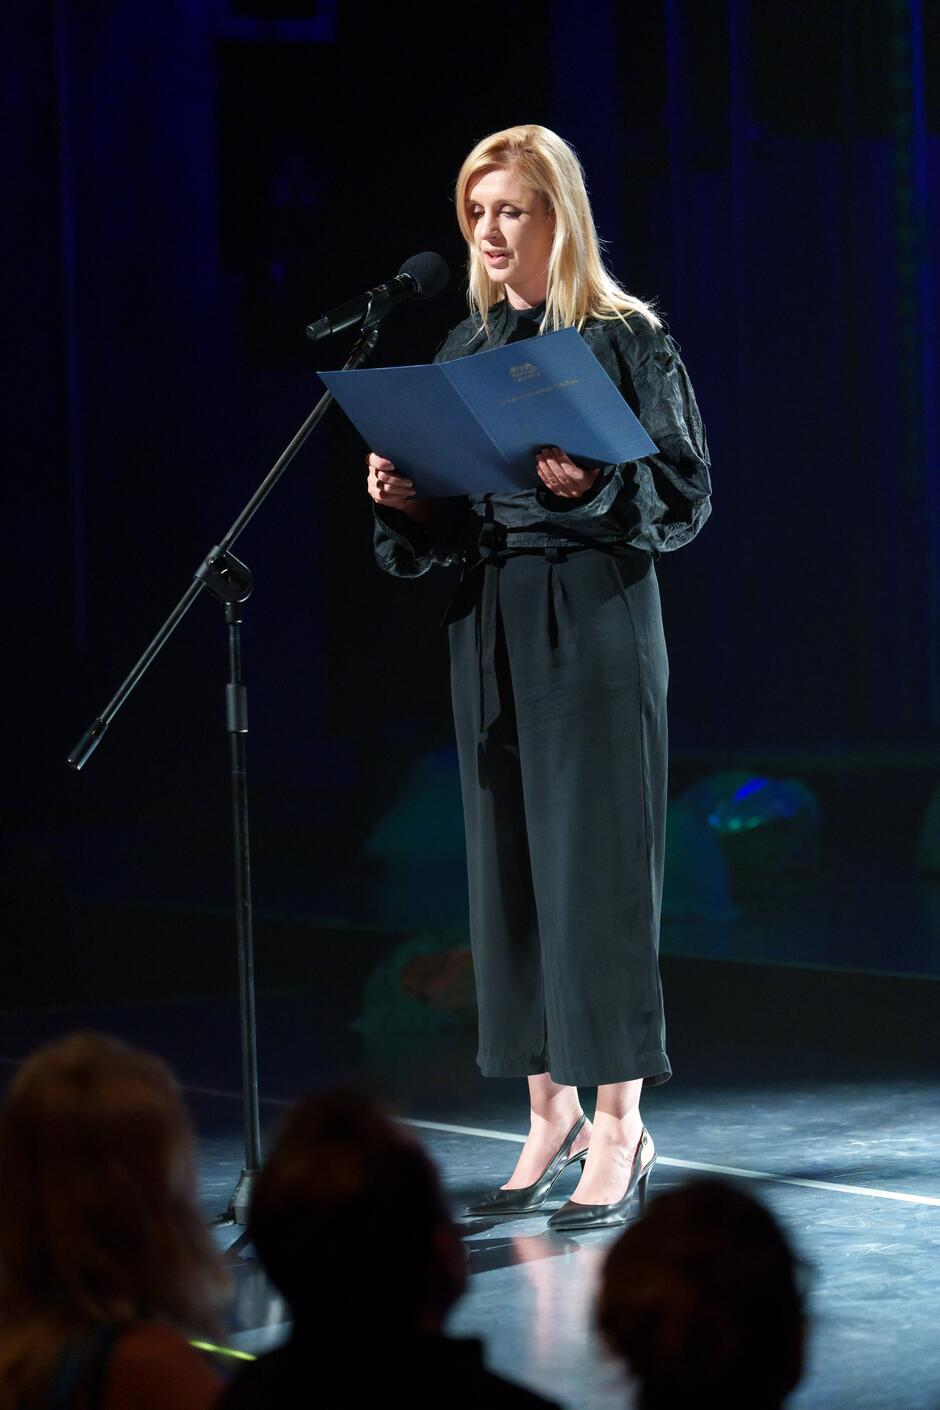 Na zdjęciu widać kobietę stojącą na scenie, trzymającą niebieską teczkę i przemawiającą do mikrofonu. Jest elegancko ubrana w czarne ubranie i buty na obcasie, a w tle widać ciemne oświetlenie sceniczne oraz publiczność siedzącą na widowni